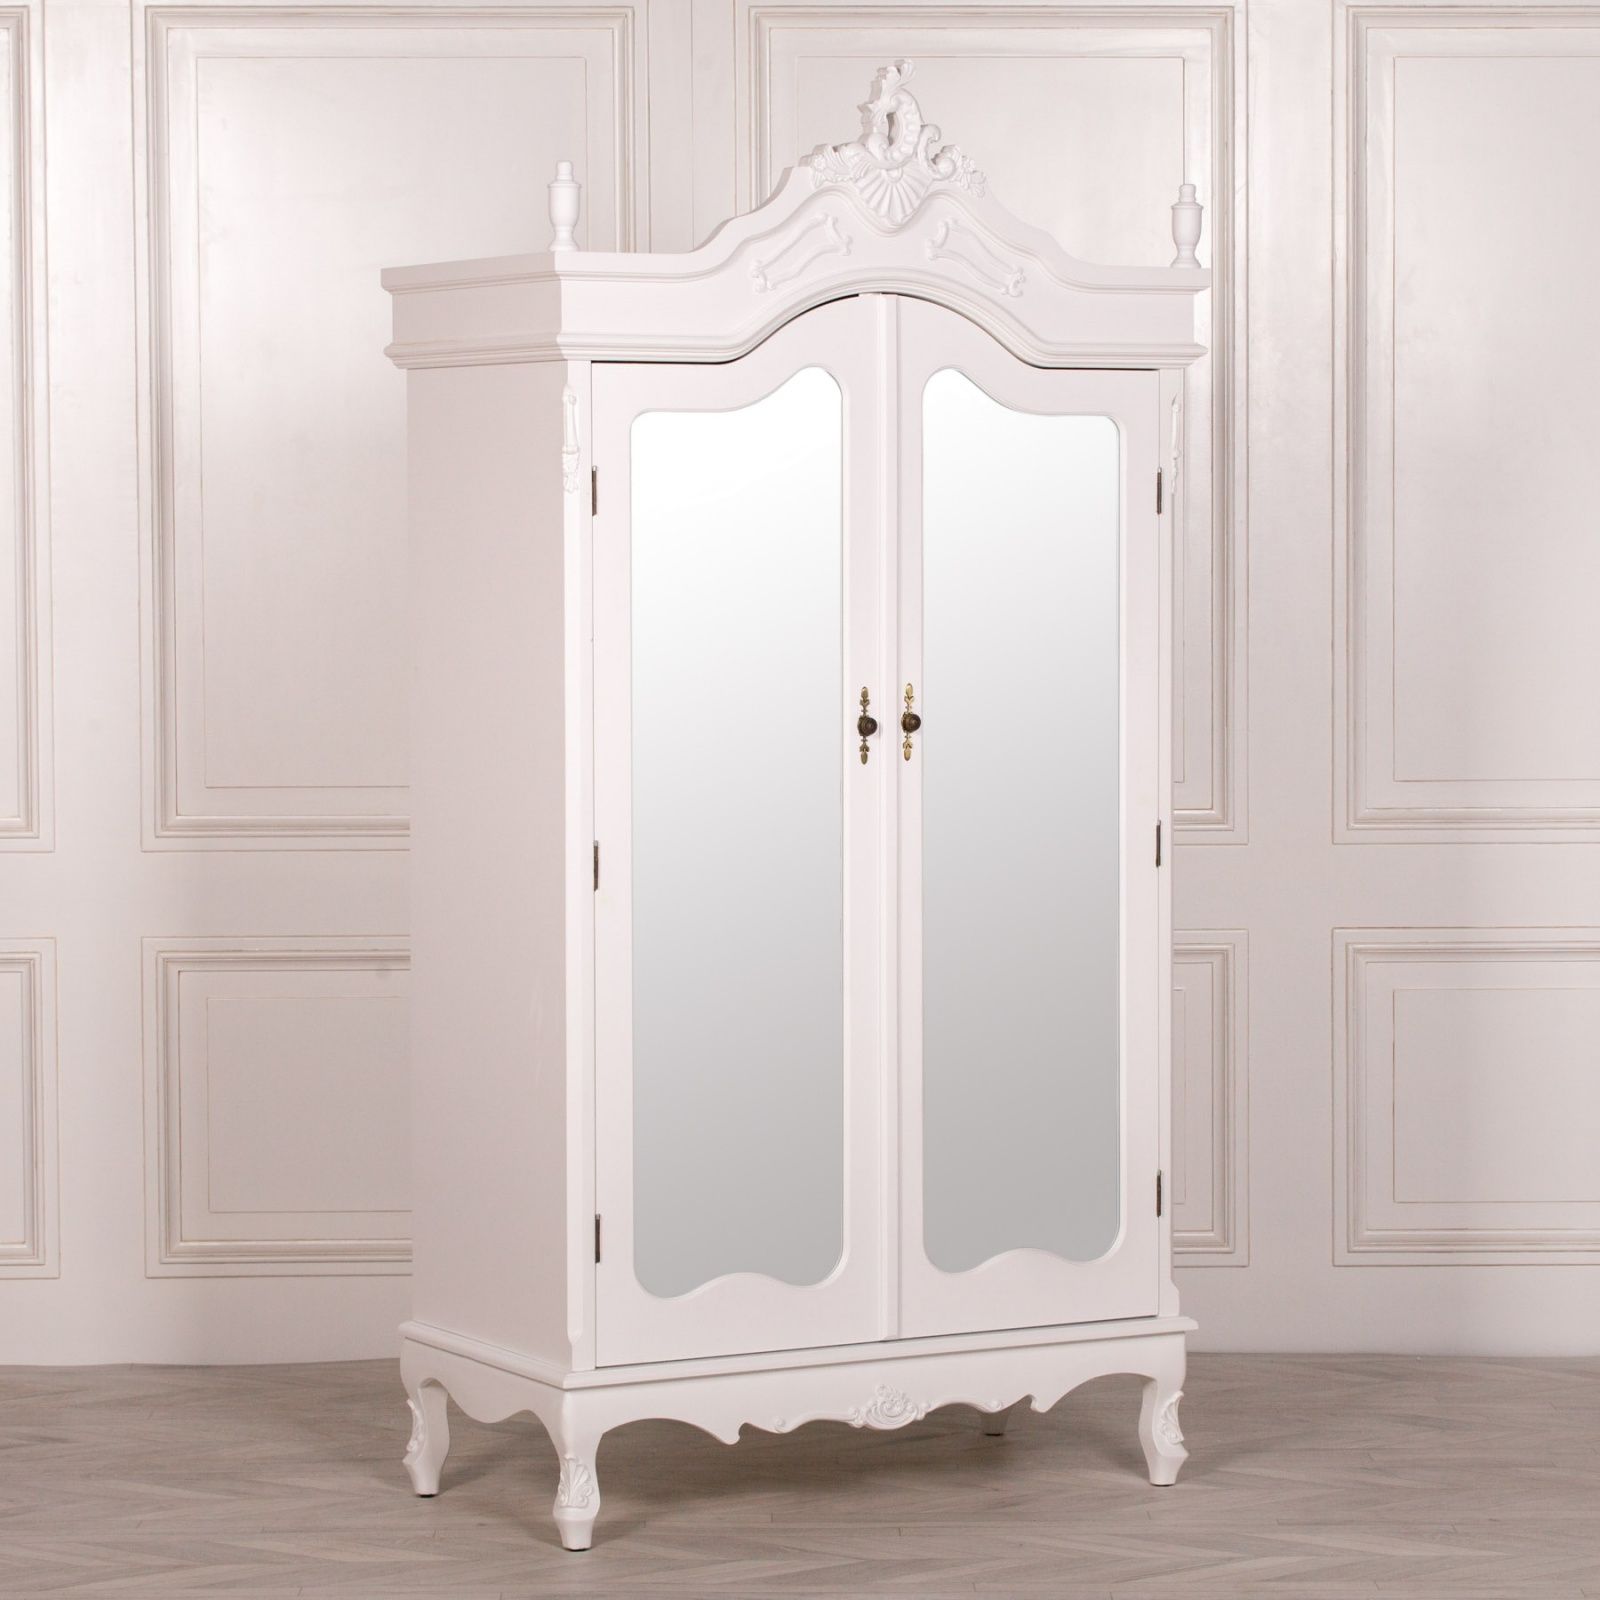 French Style Wardrobe White Mirrored Double Armoire Throughout White Wardrobes Armoire (View 6 of 15)